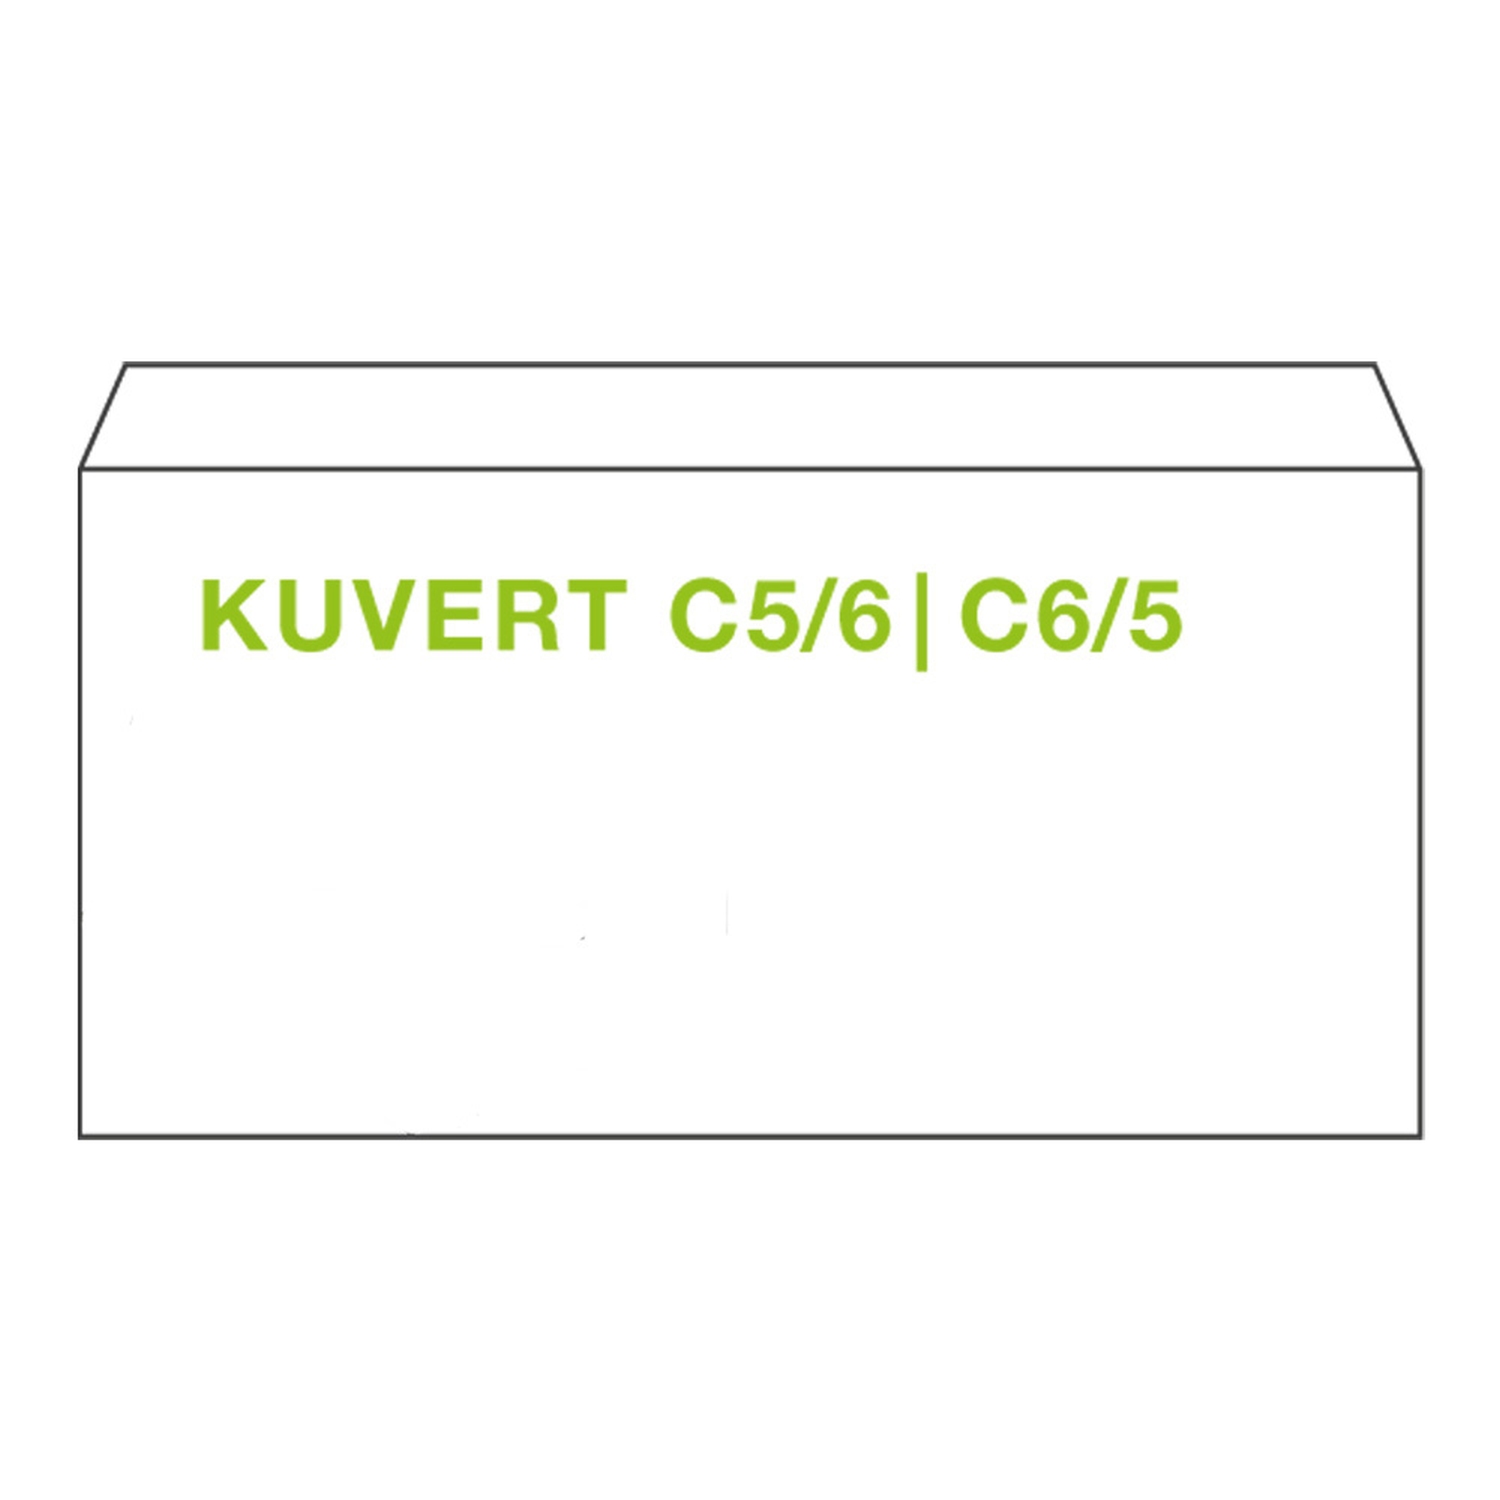 KI Briefumschlge Kuvert C5/6 110x220mm wei, 80 gr. selbstklebend, 100 Stk.